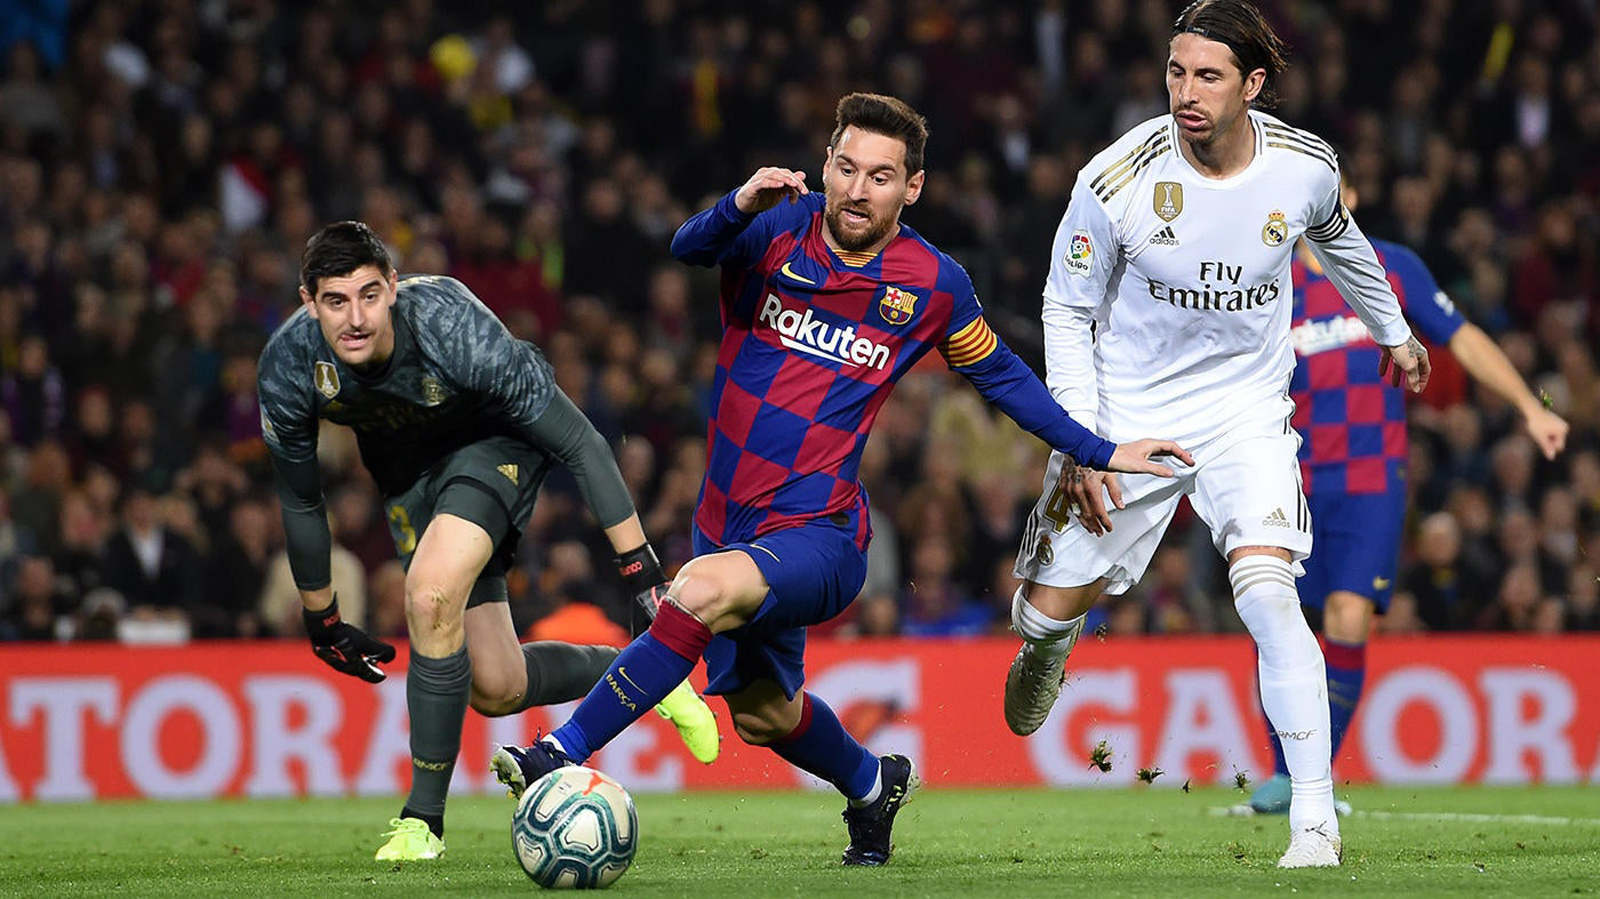 “Siêu kinh điển” Barcelona – Real Madrid: Thư hùng rực lửa, Messi mơ phục thù - 5